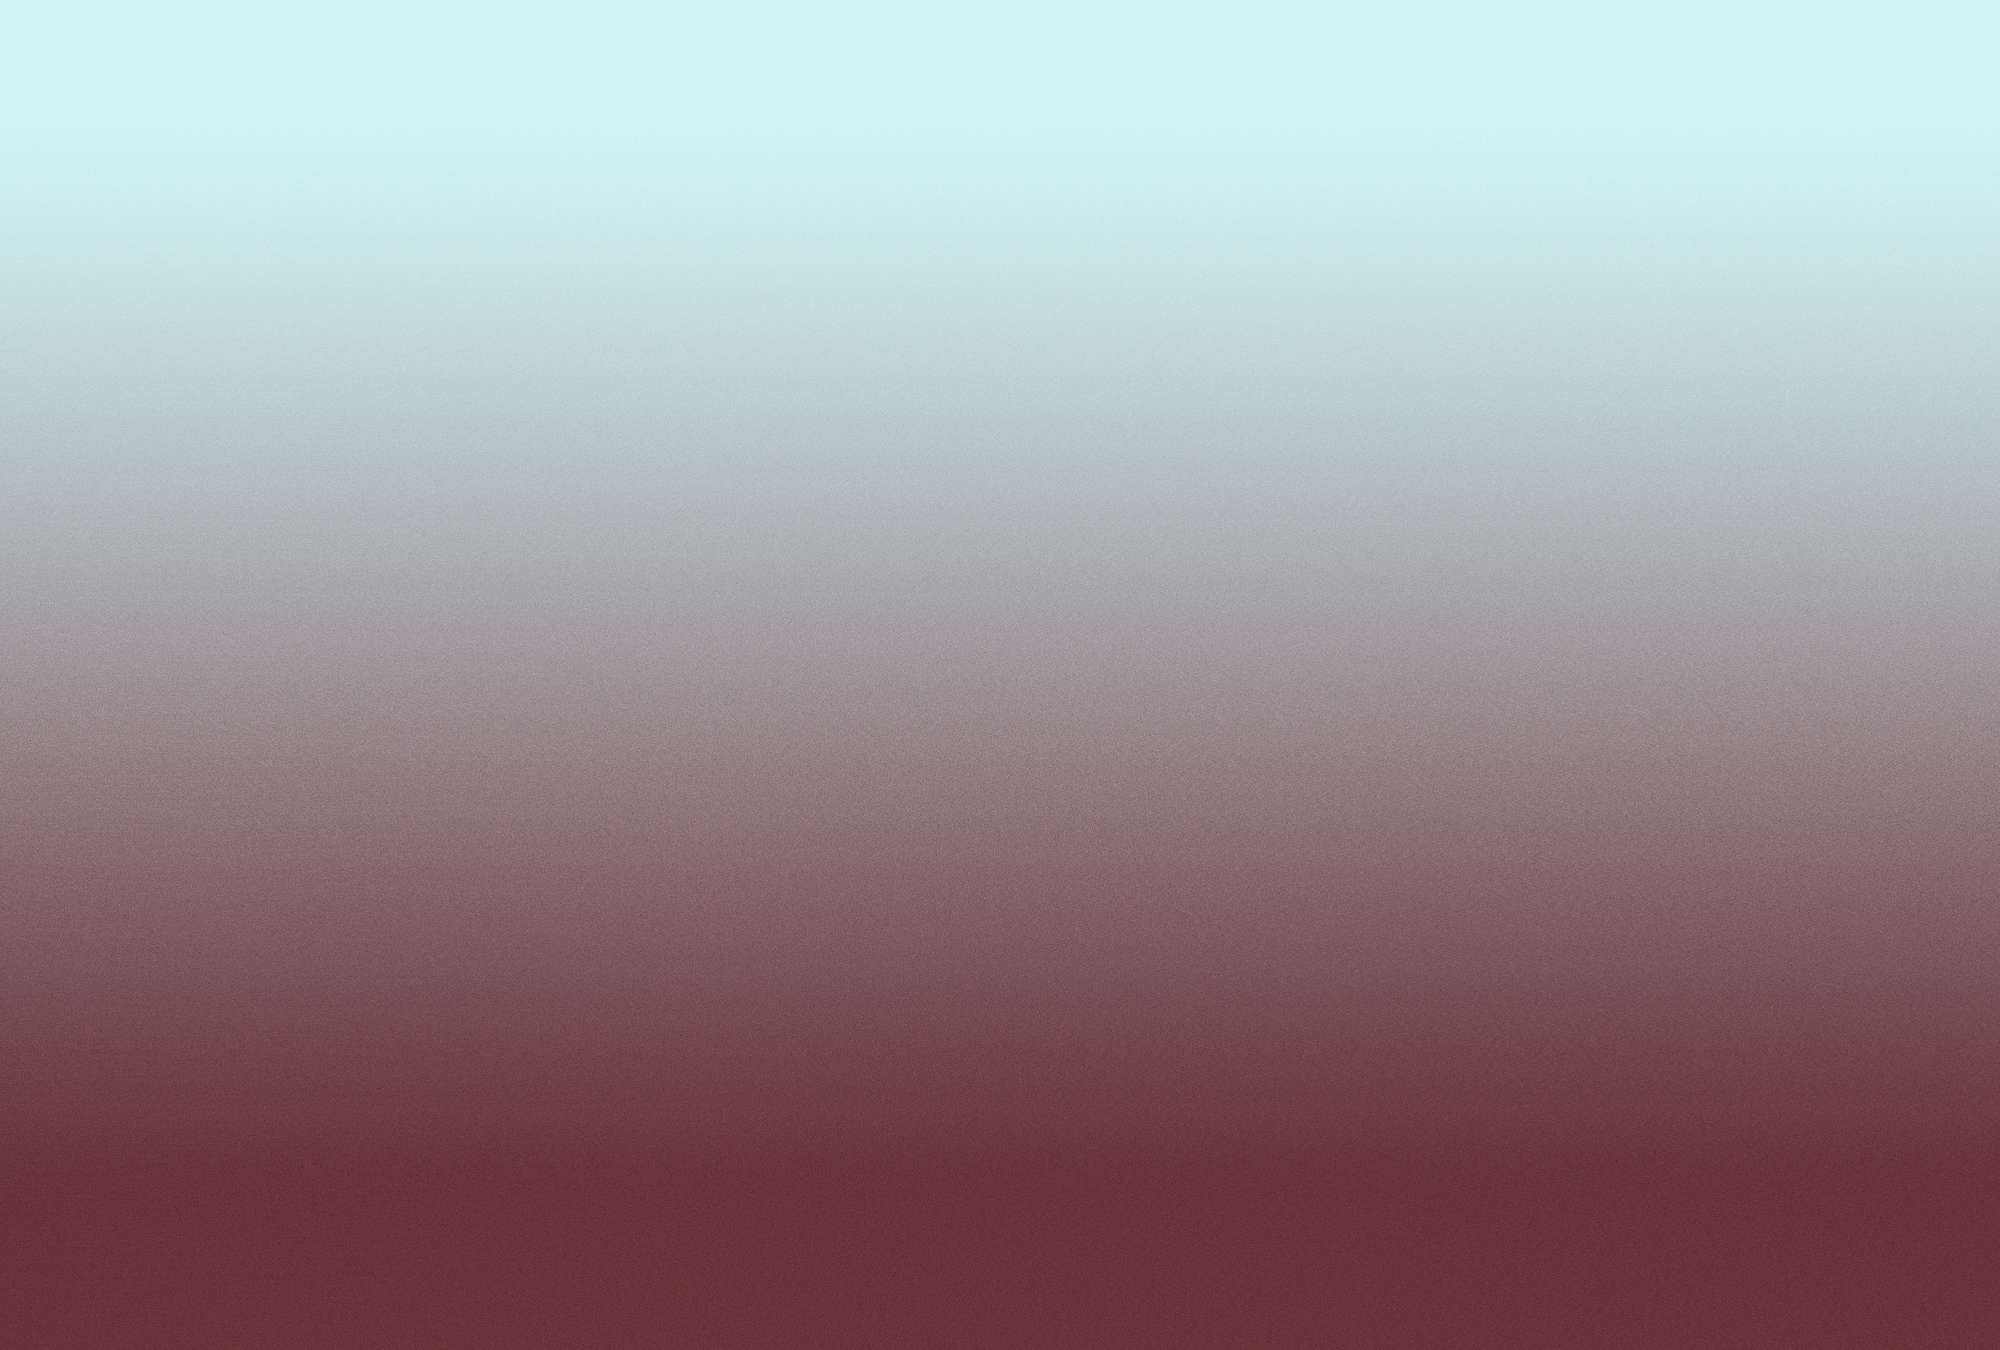             Colour Studio 3 - Carta da parati fotografica Ombre Blu chiaro e rosso vino con sfumature
        